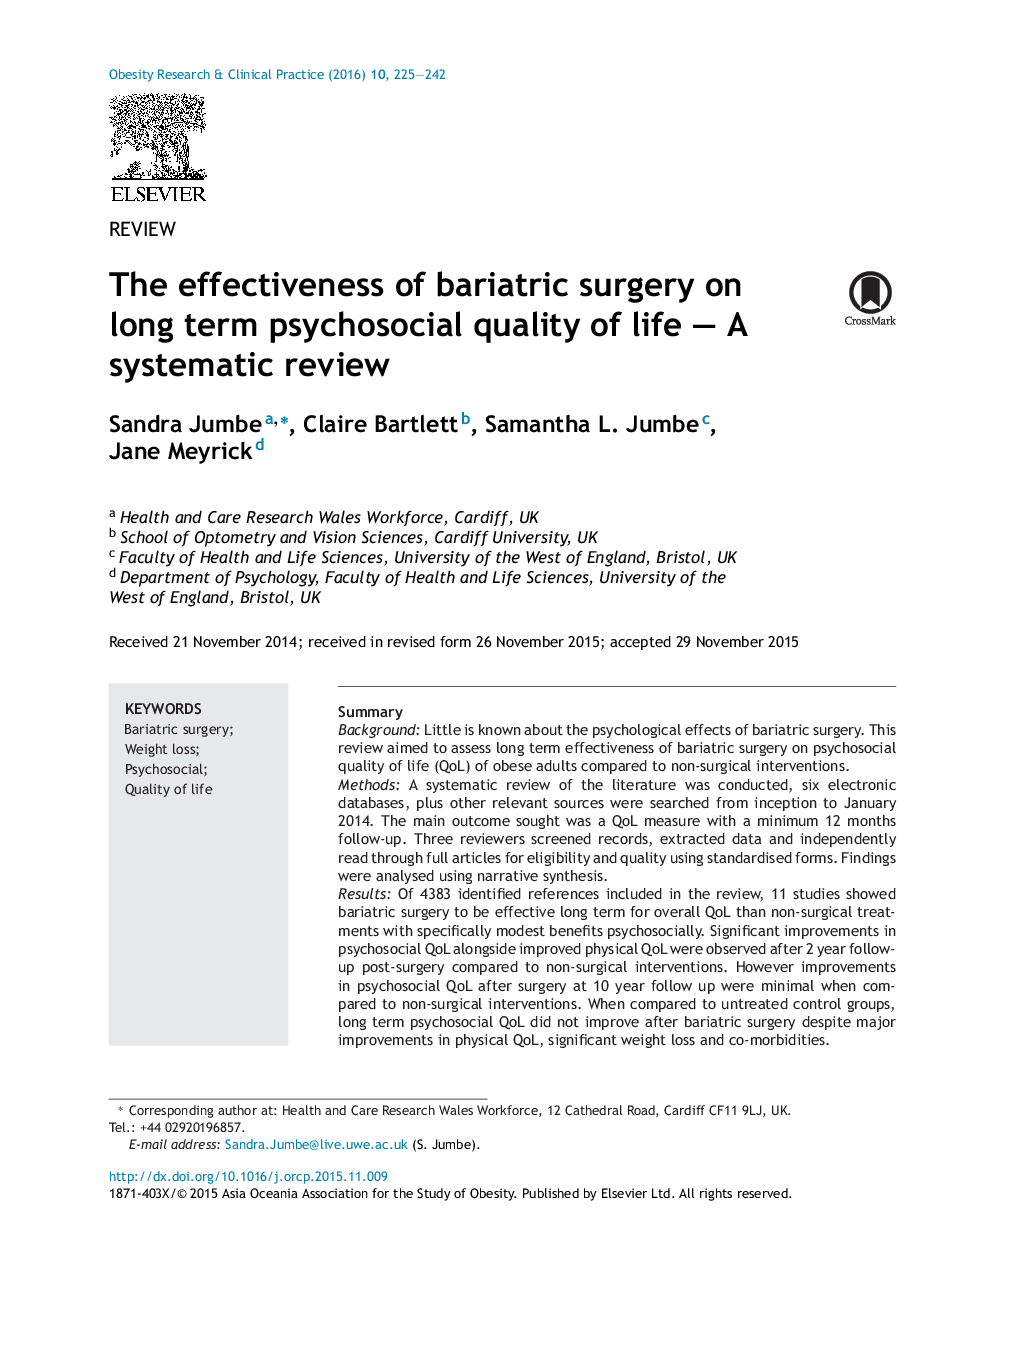 اثربخشی جراحی برازیراسیون در کیفیت کیفی زندگی روان شناختی بلند مدت؟ بررسی سیستماتیک 